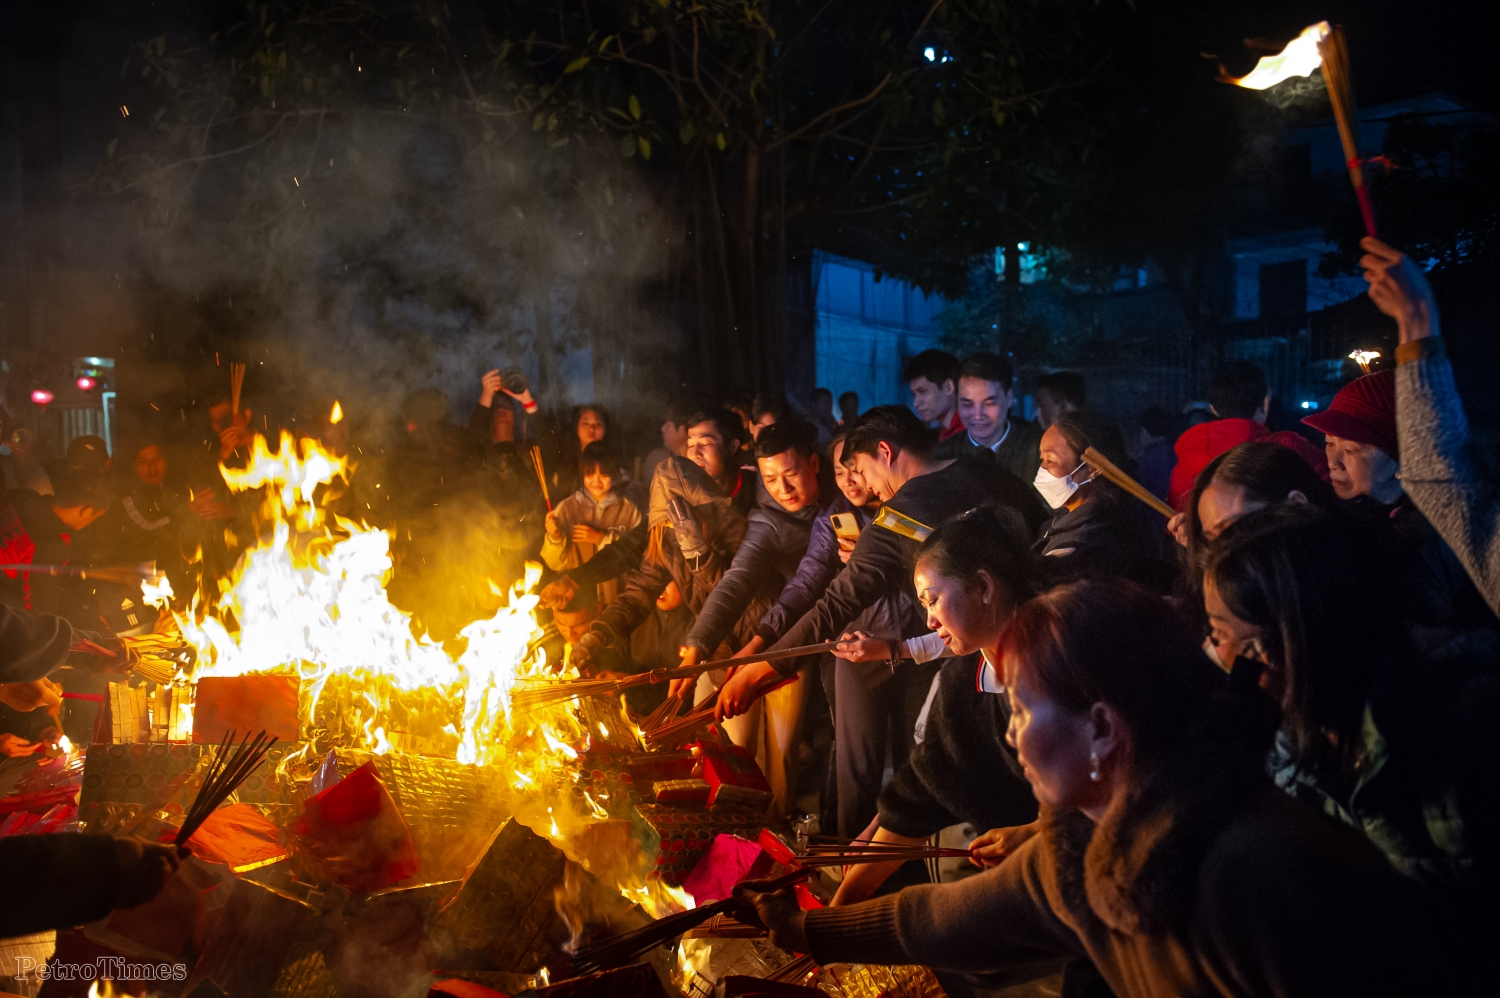 Độc đáo lễ hội rước lửa lấy may dịp năm mới